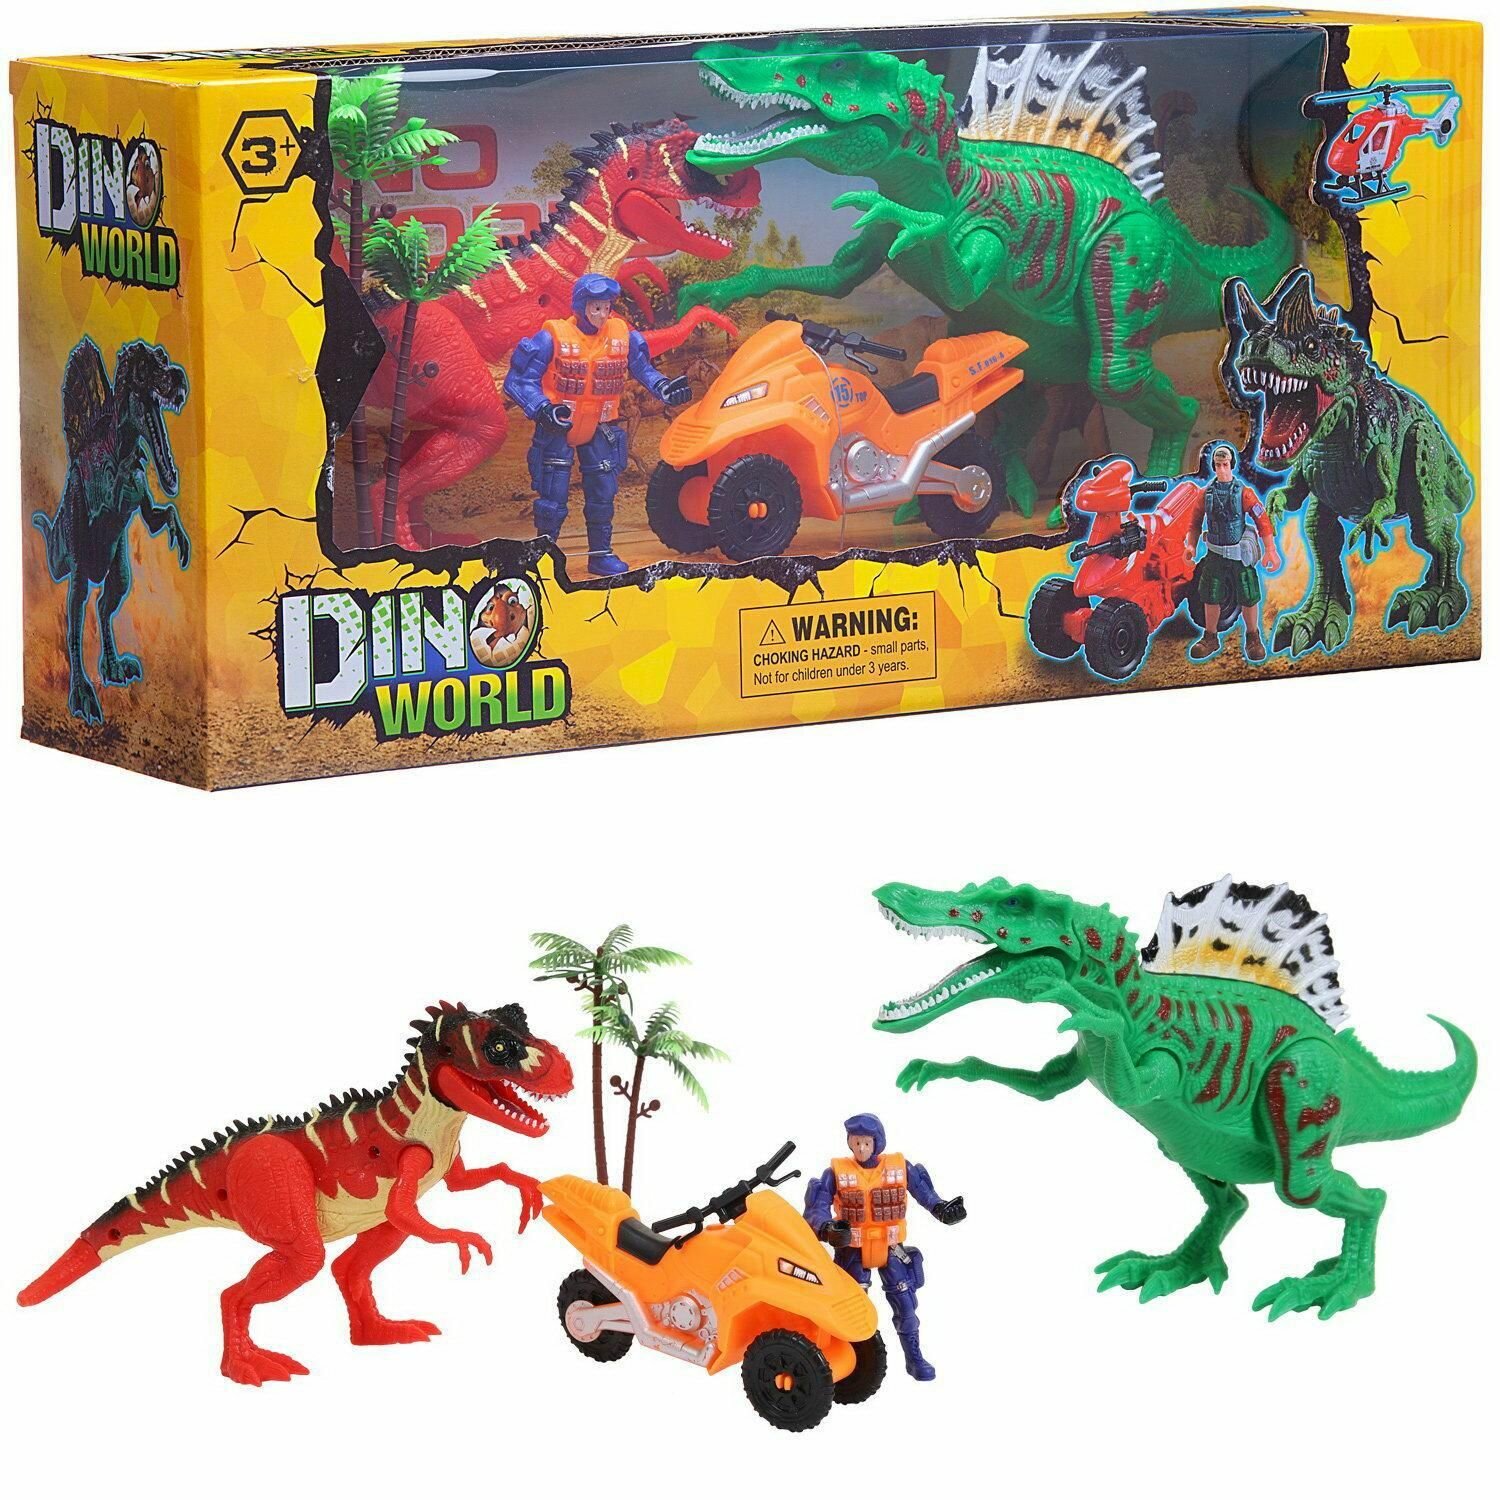 Детский игровой набор "Мир динозавров" (2 больших динозавра, мотоцикл, фигурка человека, акссесуары), WA-14218